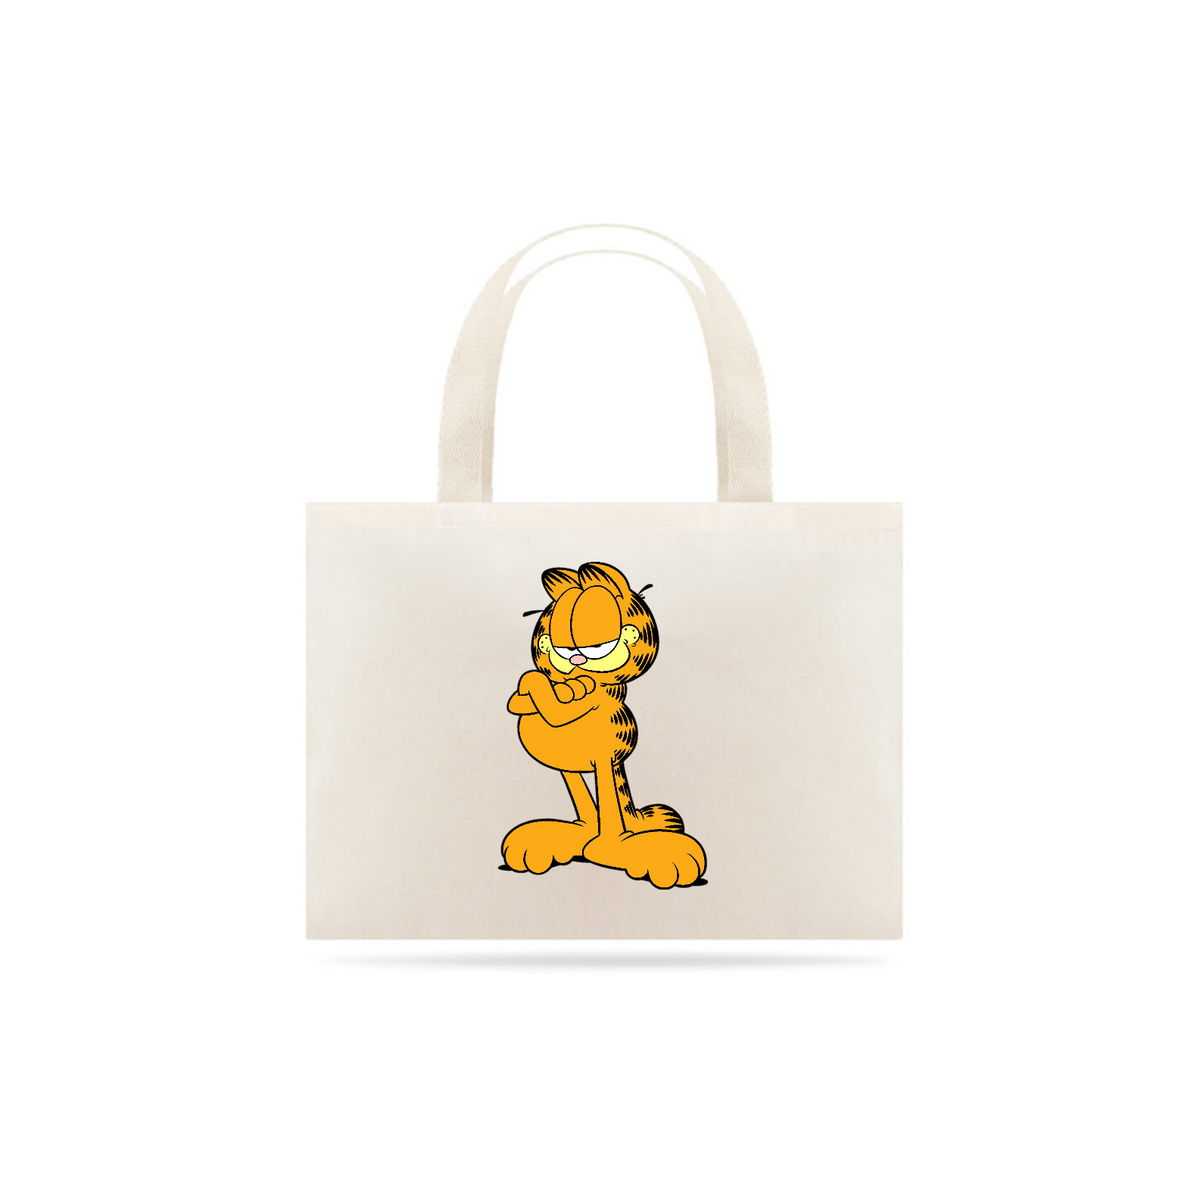 Nome do produto: Eco Bag - Garfield - Model 2